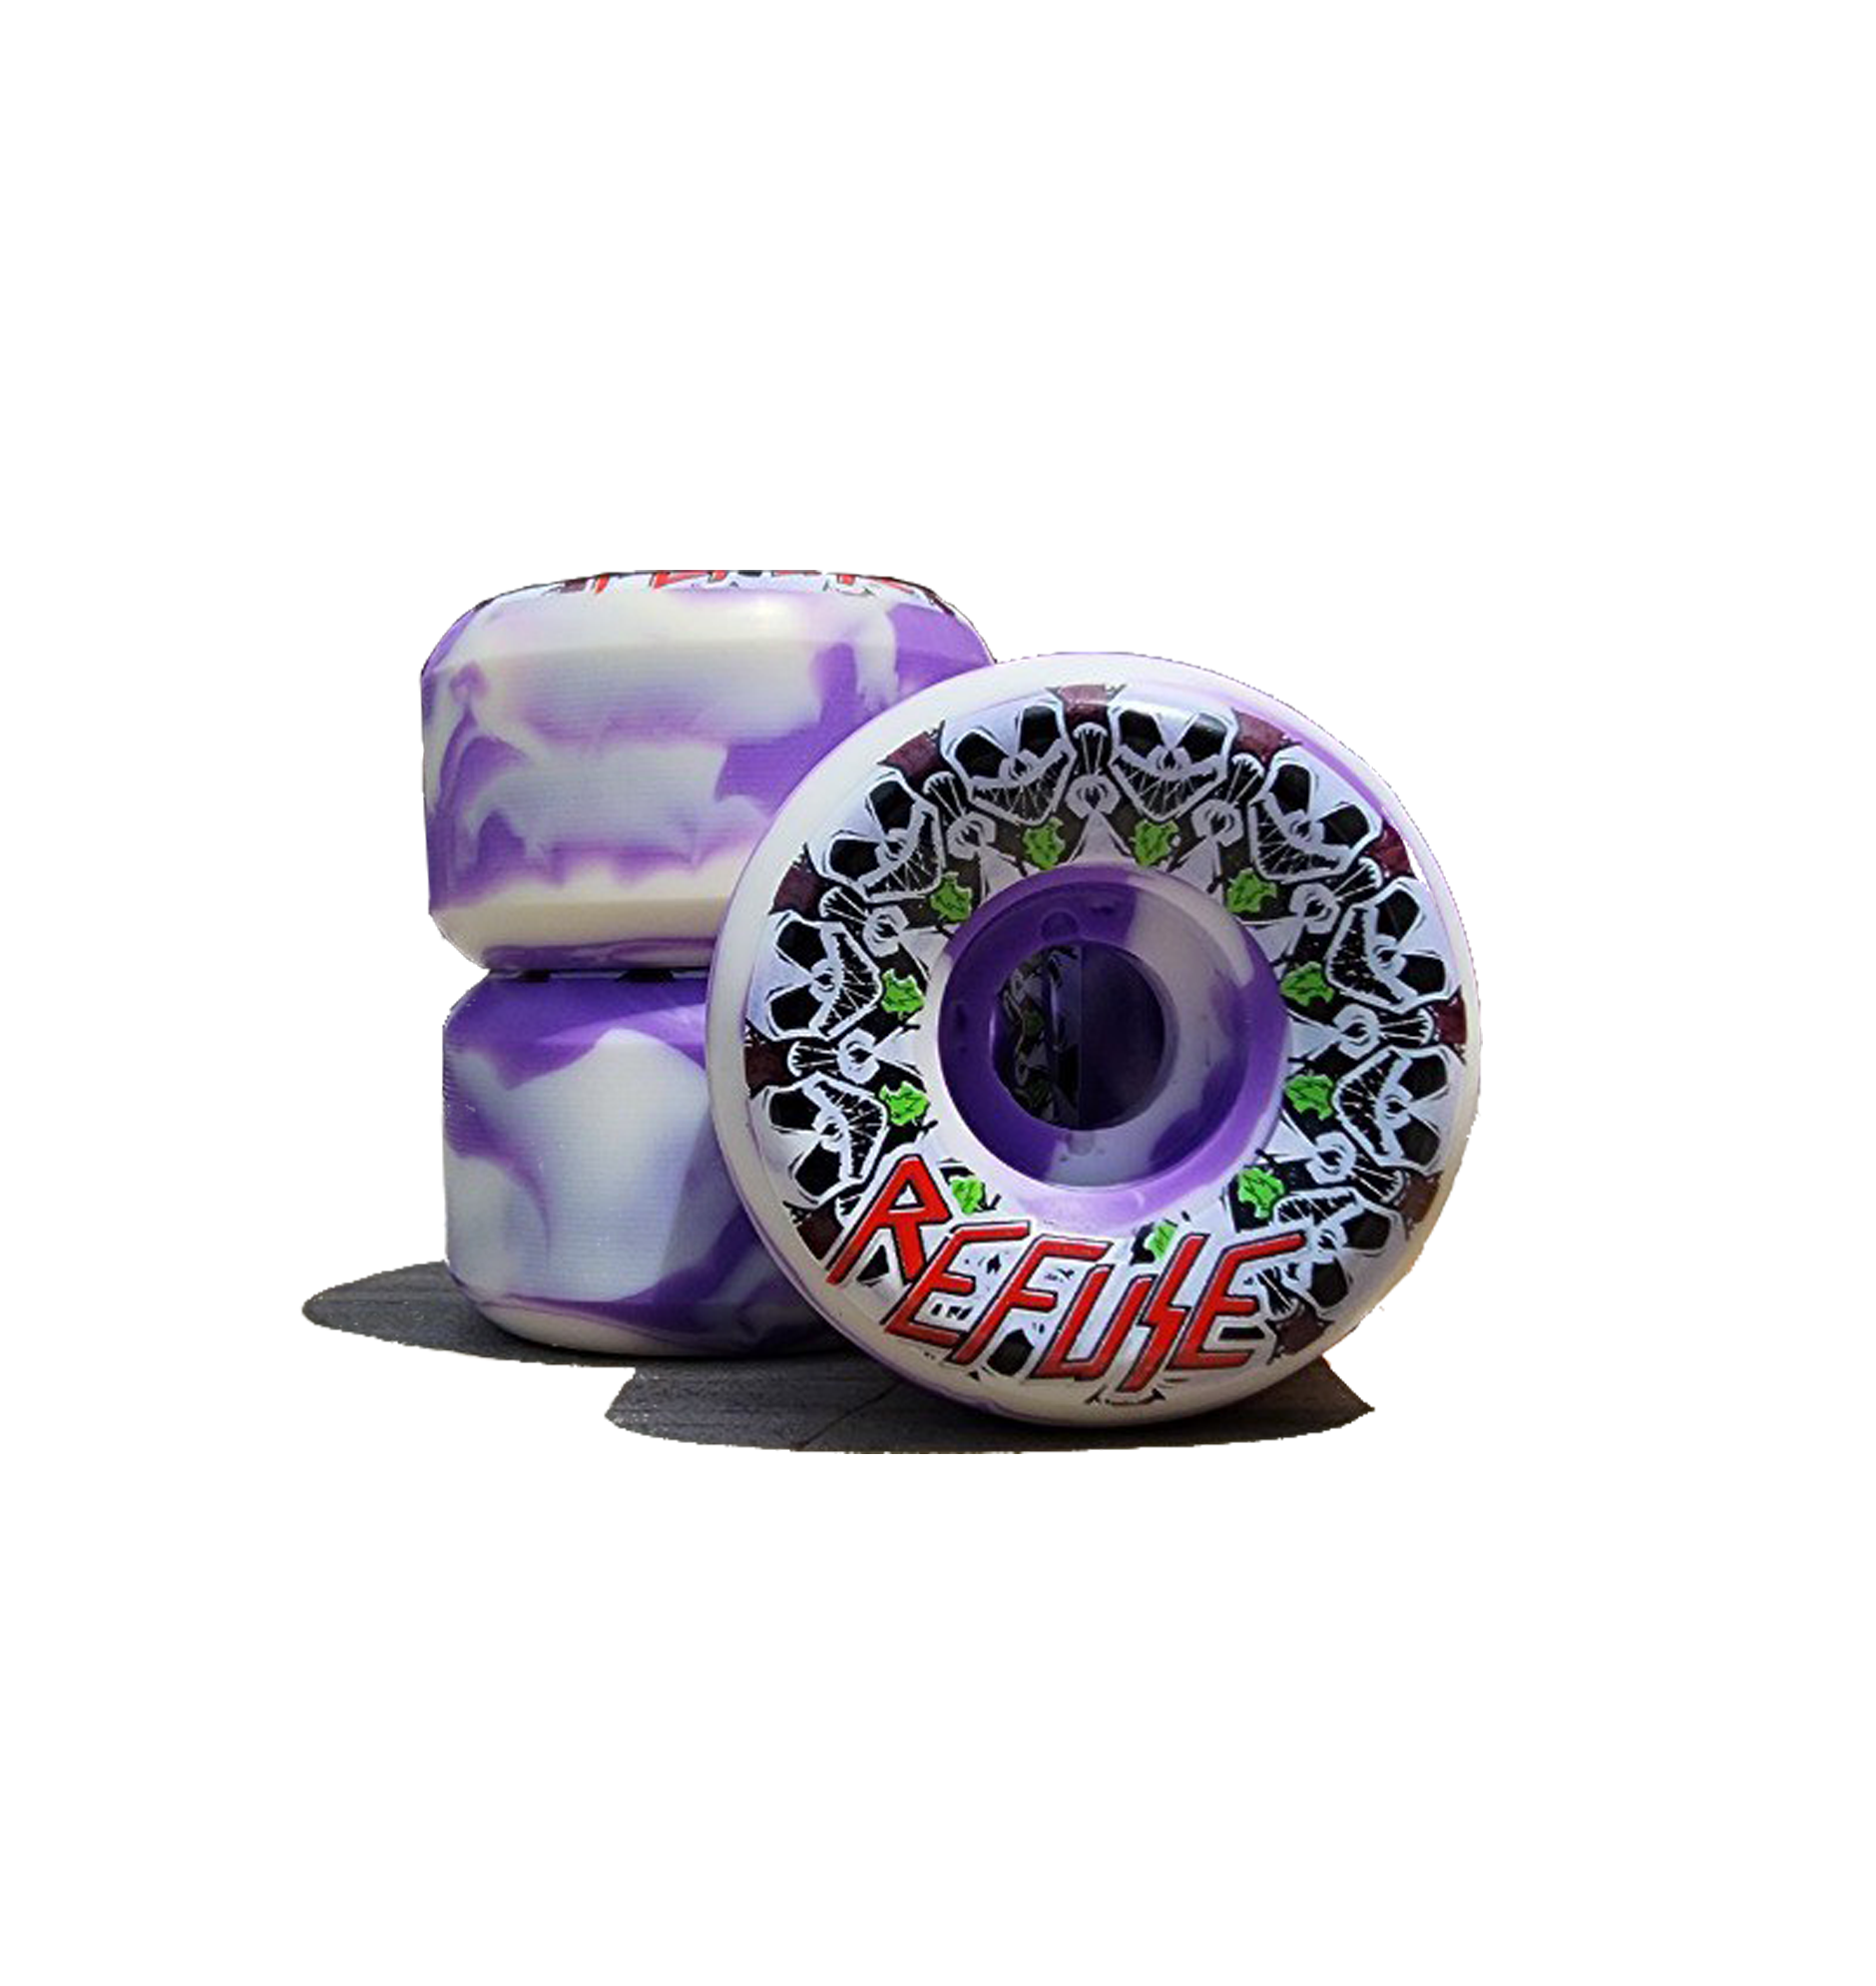 54mm Refuse Wheels - 101a purple & white swirl - Skateboard Wheel